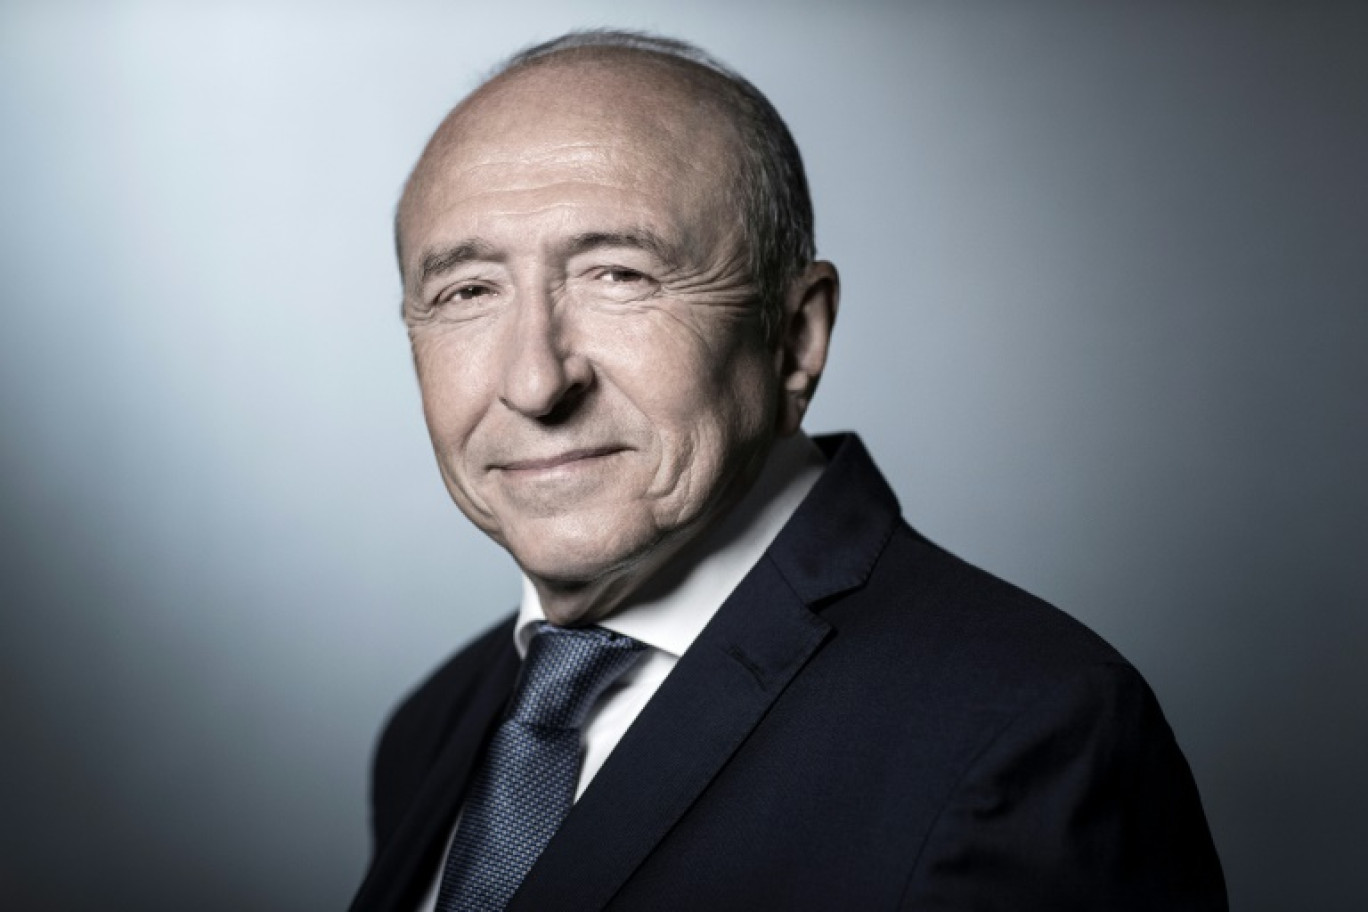 L'ex-ministre de l'Intérieur et ancien maire de Lyon, lors d'une séance photo place Beauvau à Paris, le 24 août 2018 © JOEL SAGET